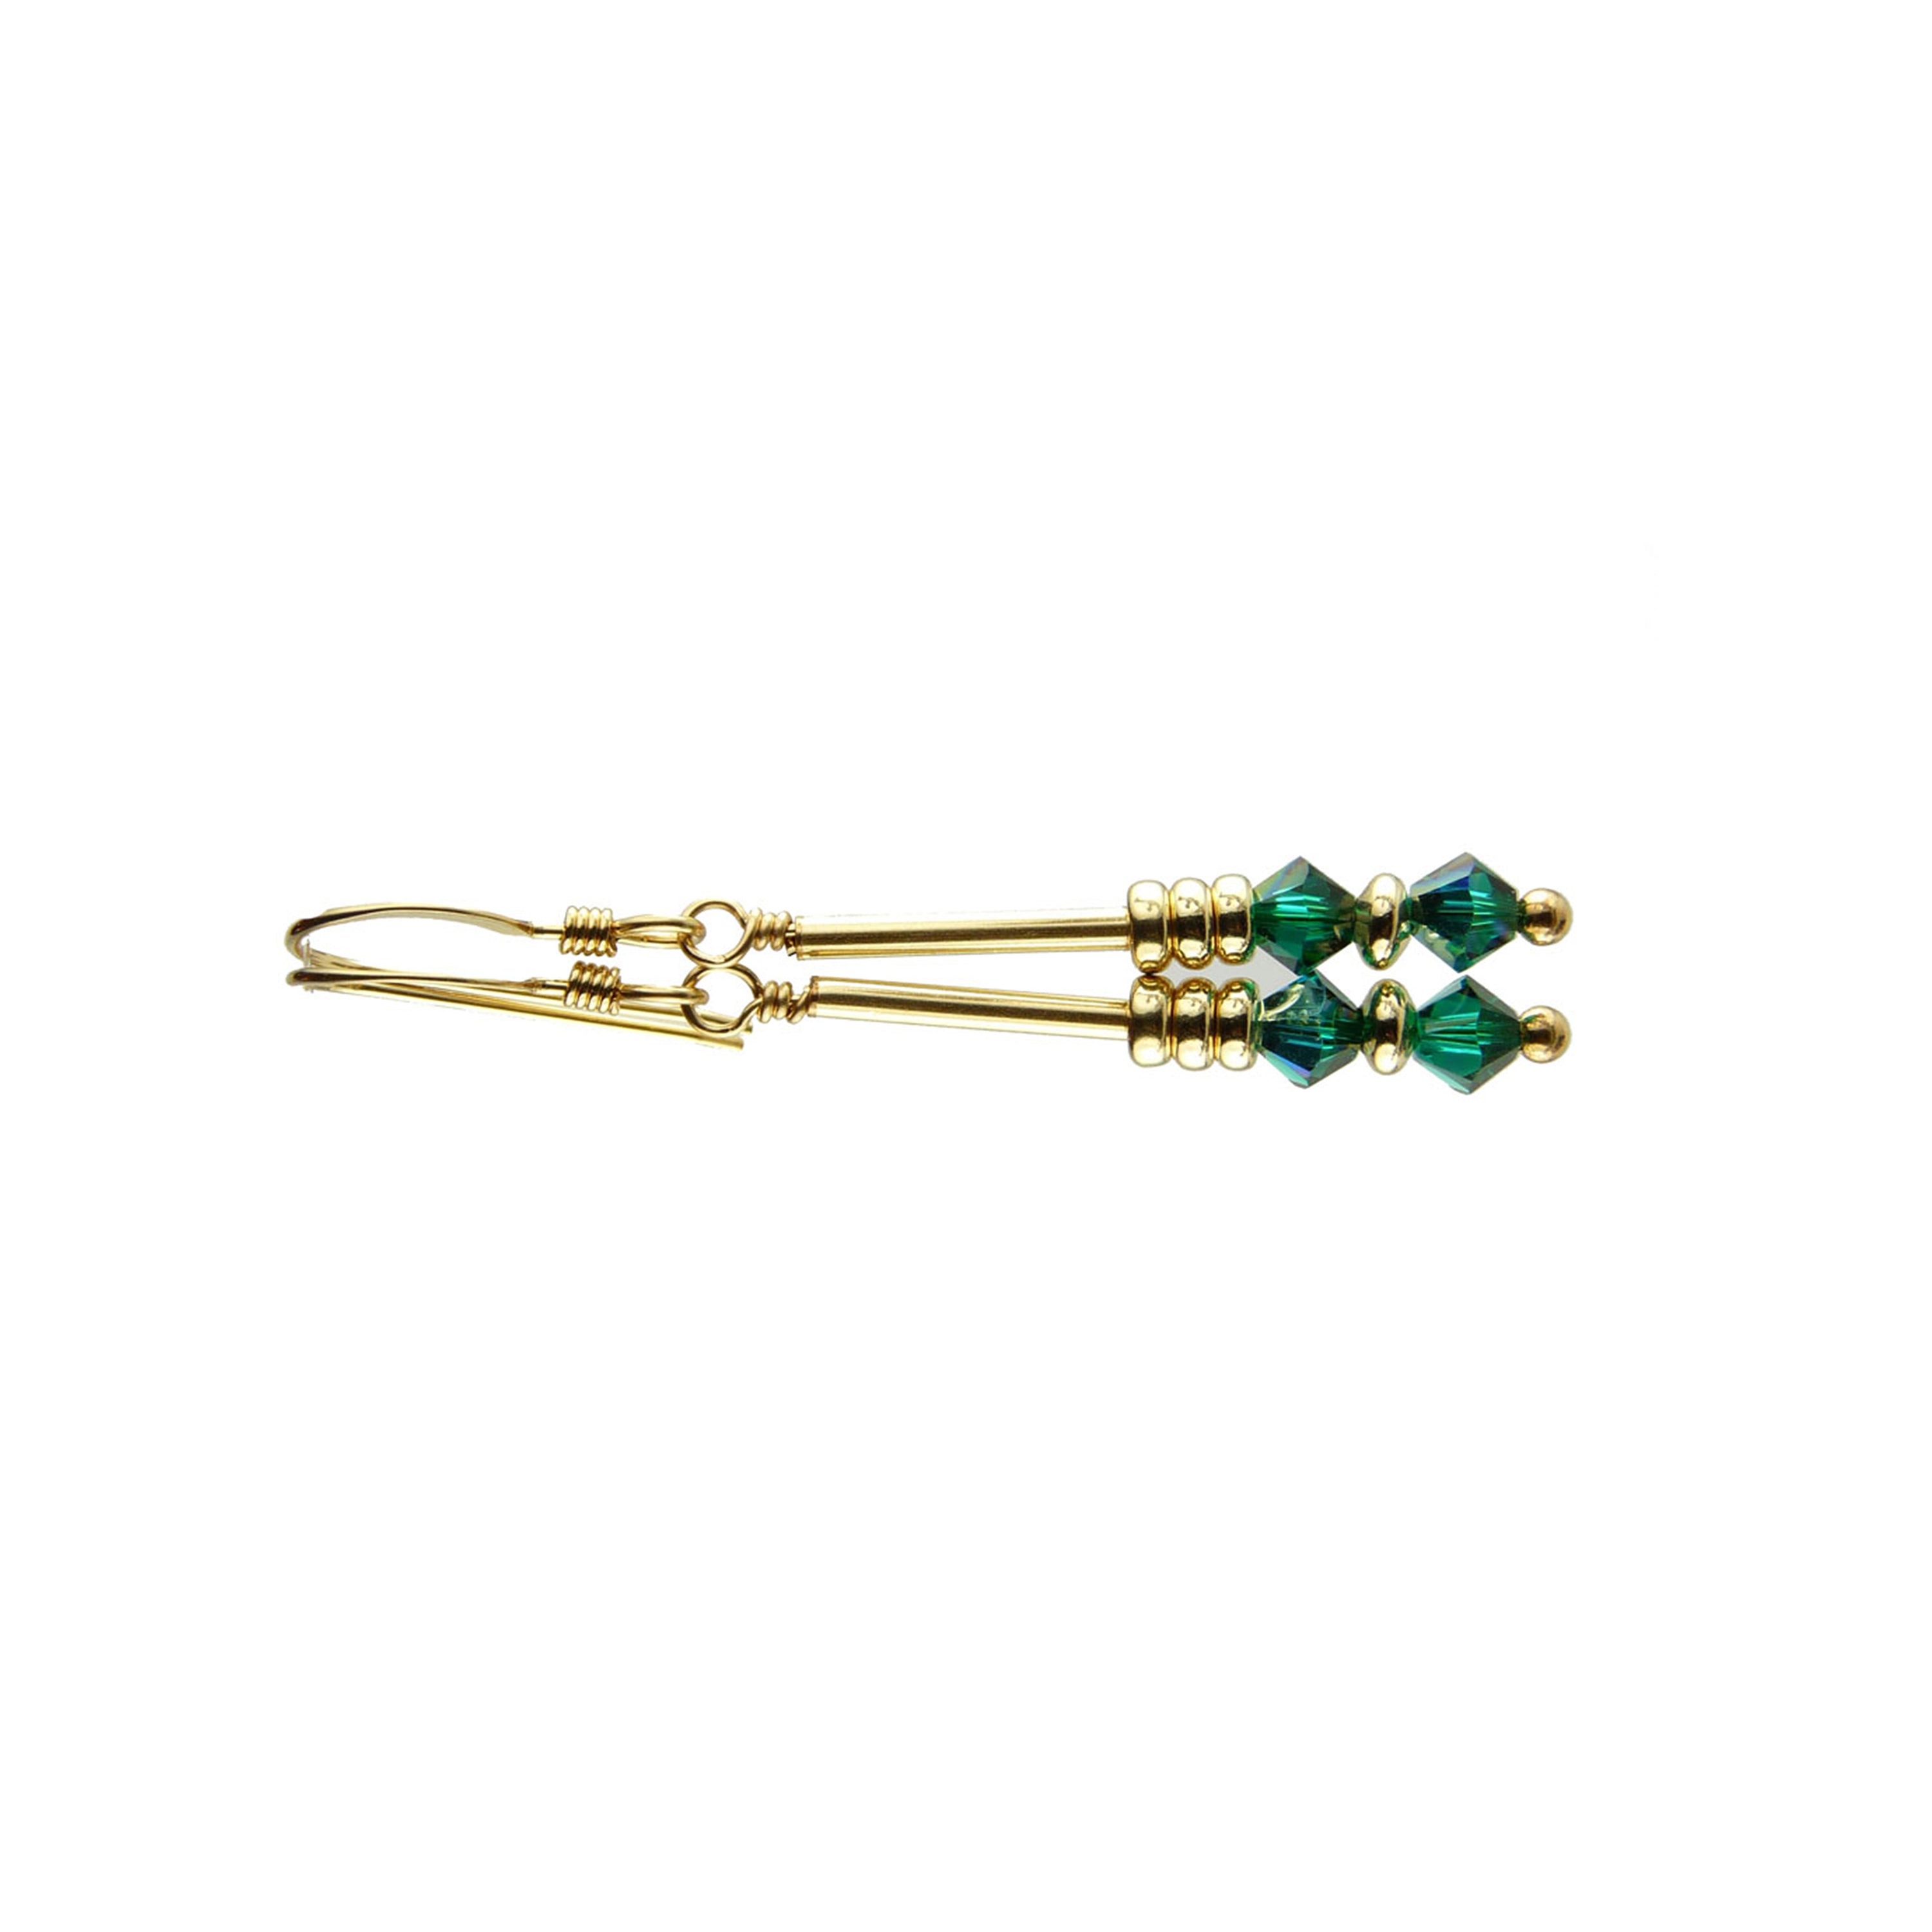 Emerald Crystal Earrings,  May Birthstone Earrings, Green Minimalist 14K GF Dangle Earrings, Crystal Jewelry Elements